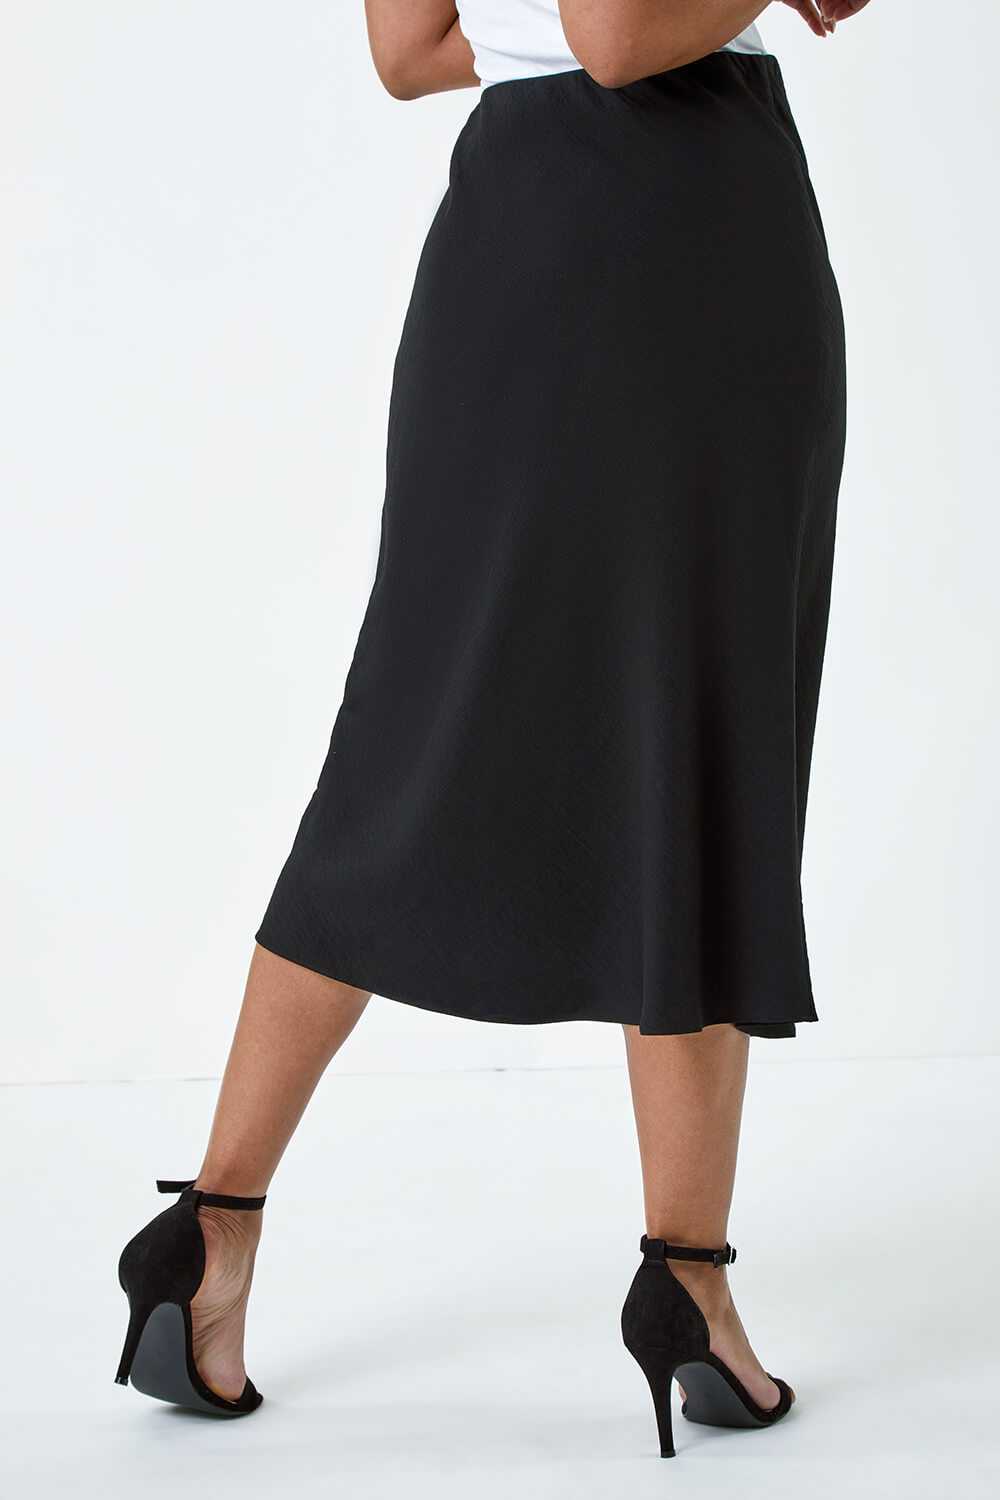 Black Petite Plain Bias Cut Midi Skirt, Image 3 of 5